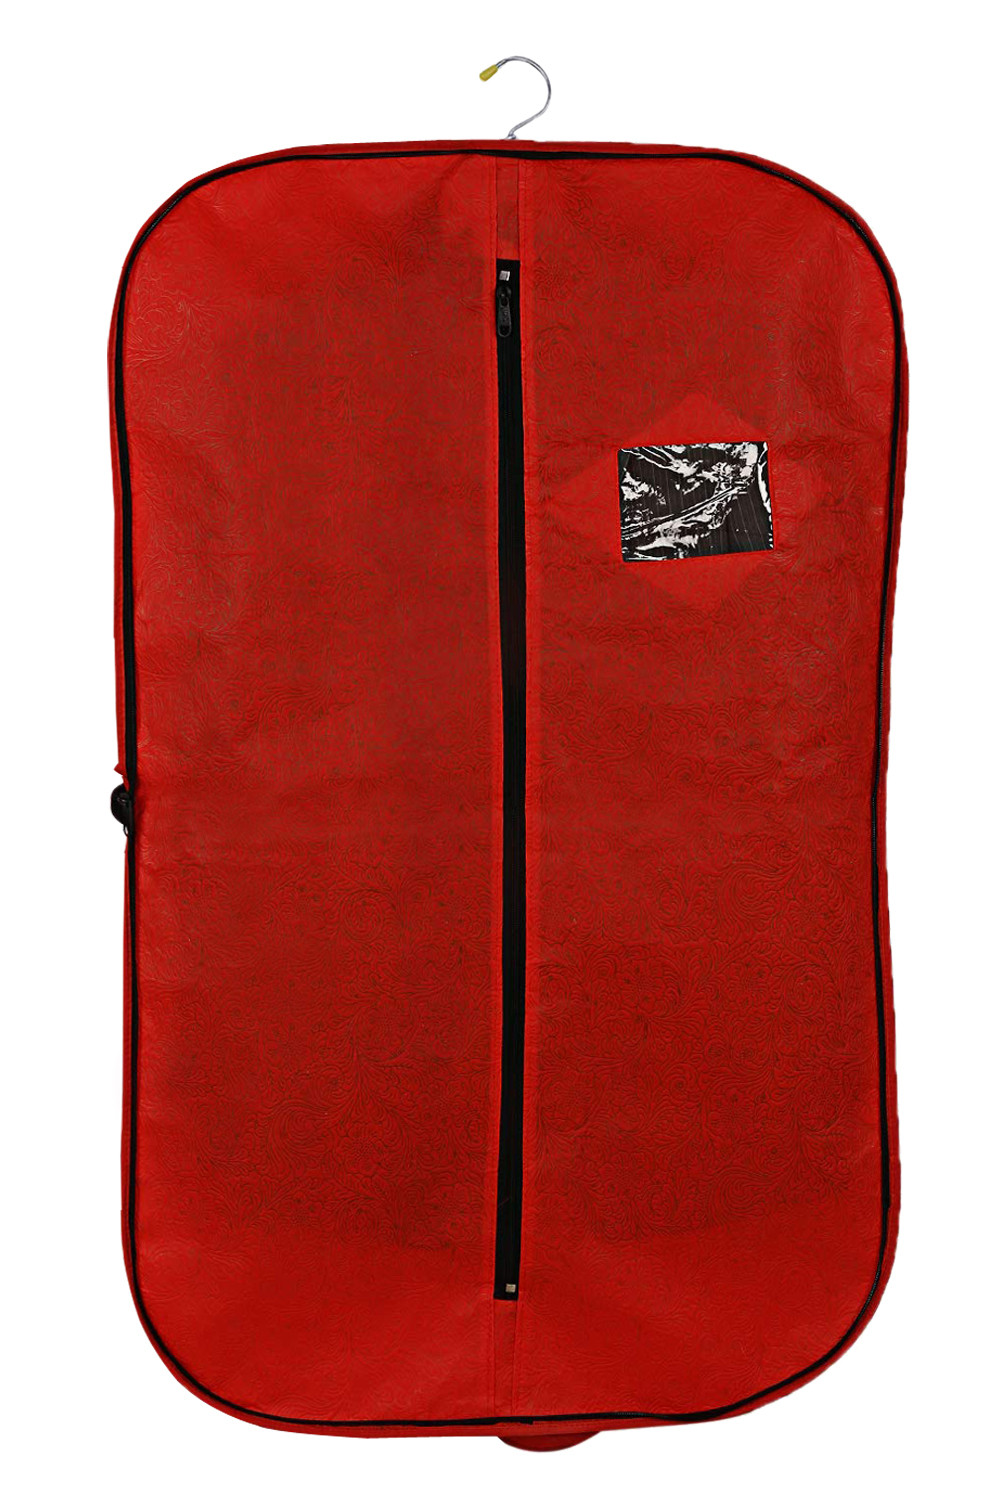 Kuber Industries Embossed Design Foldable Non Woven Men's Coat Blazer Cover (Red & Golden)  -CTKTC42271